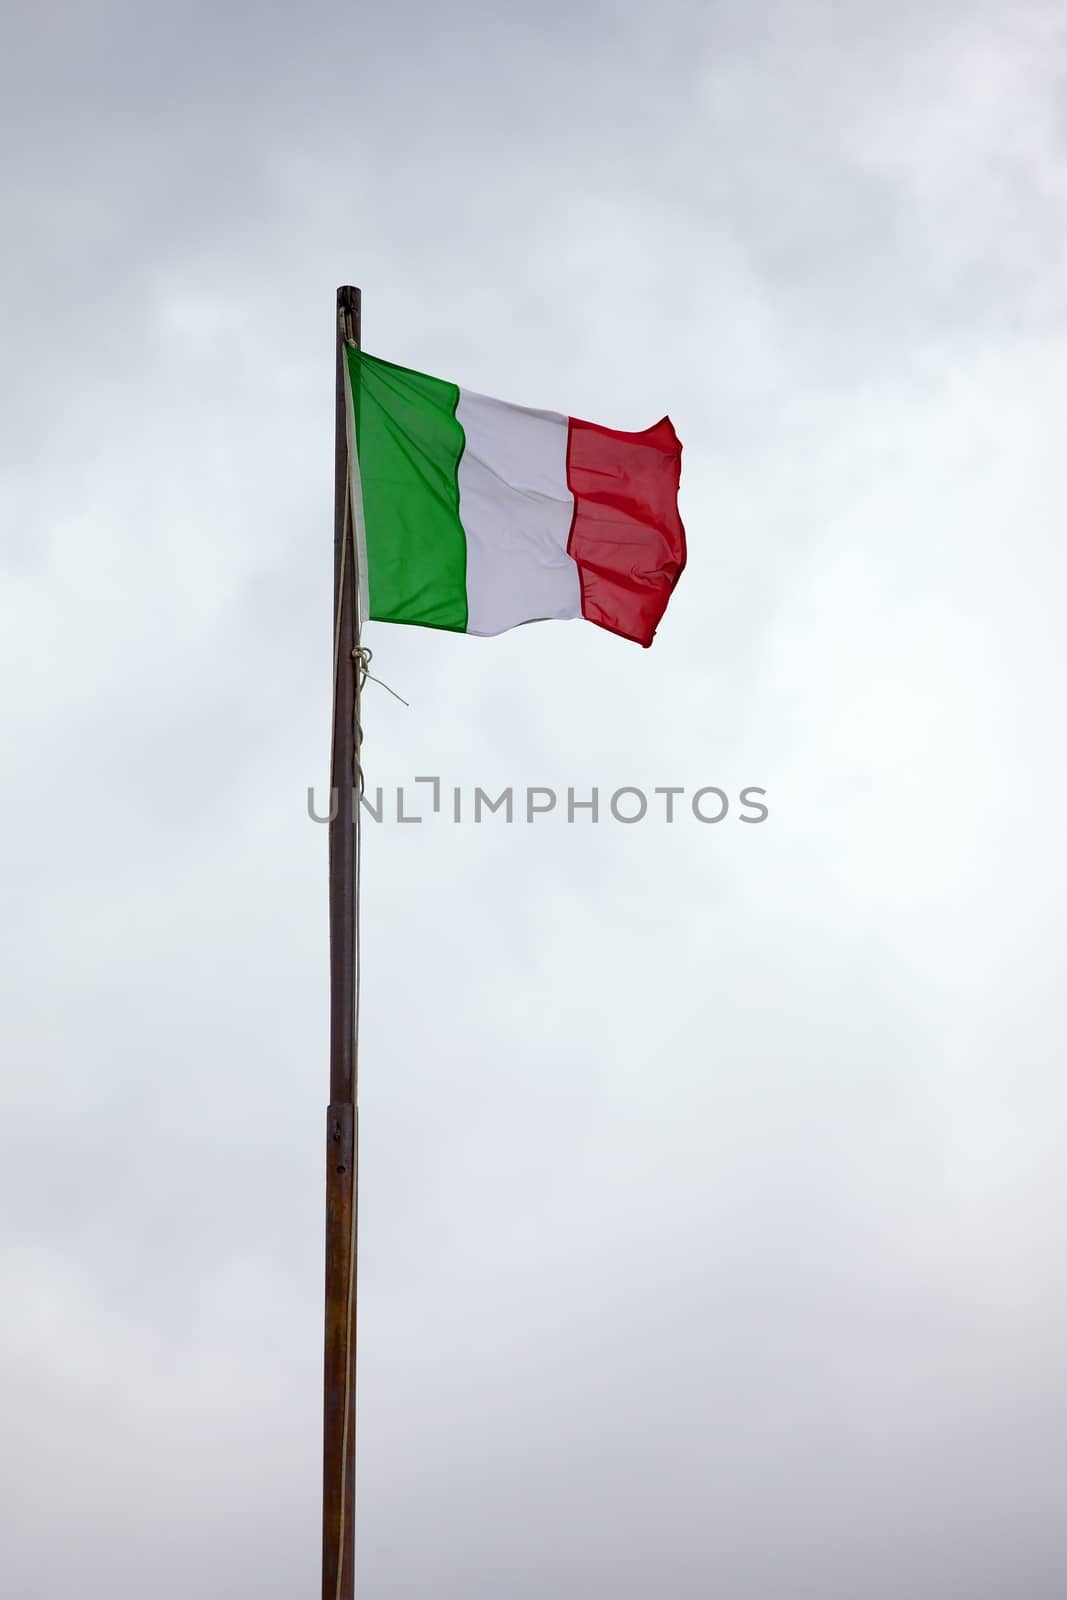 Italian national flag on a mast